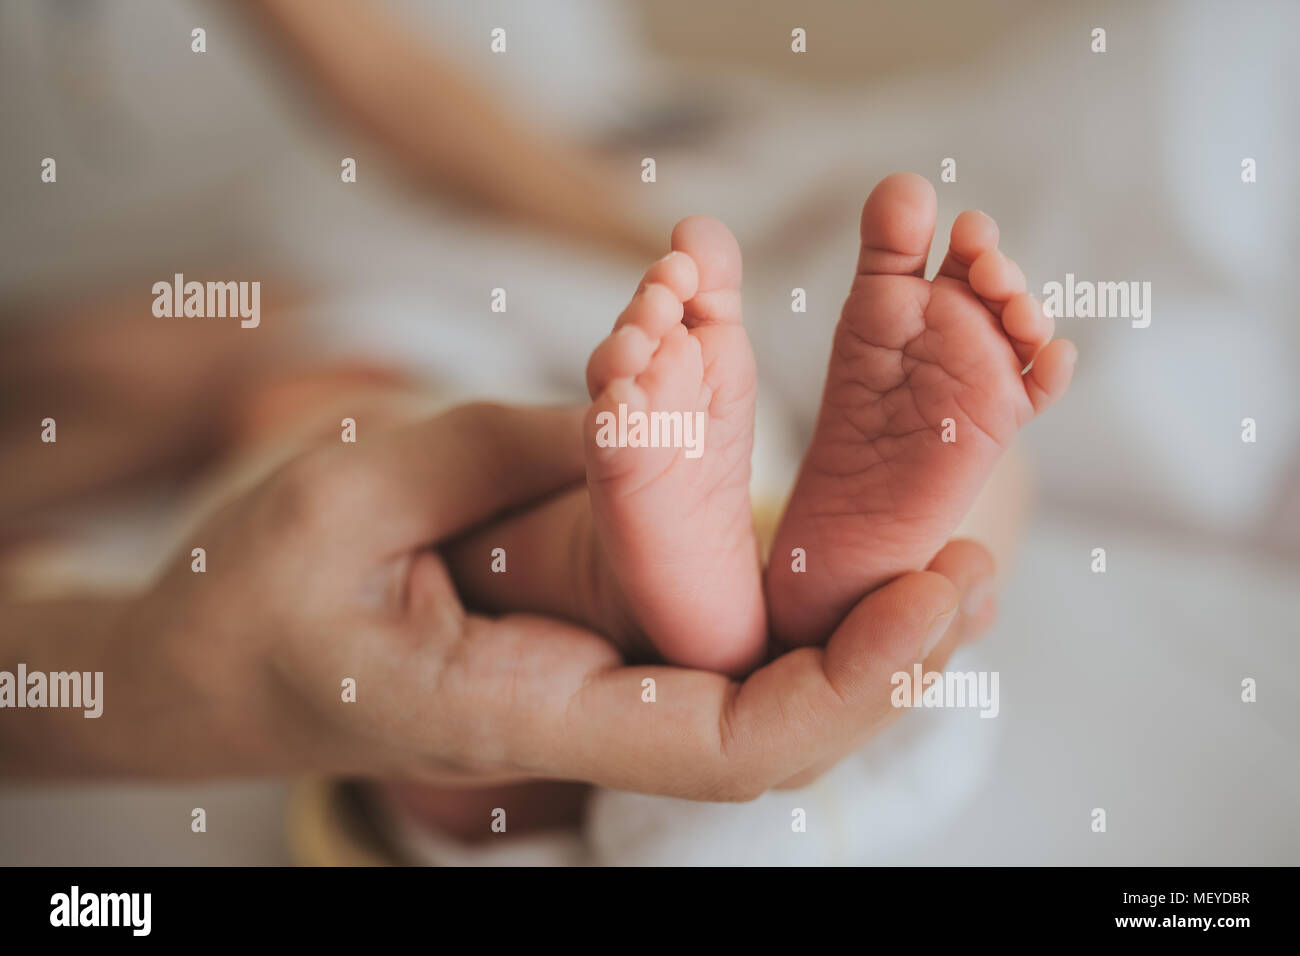 Madre feets attesa del neonato.skin care concetto. Foto Stock